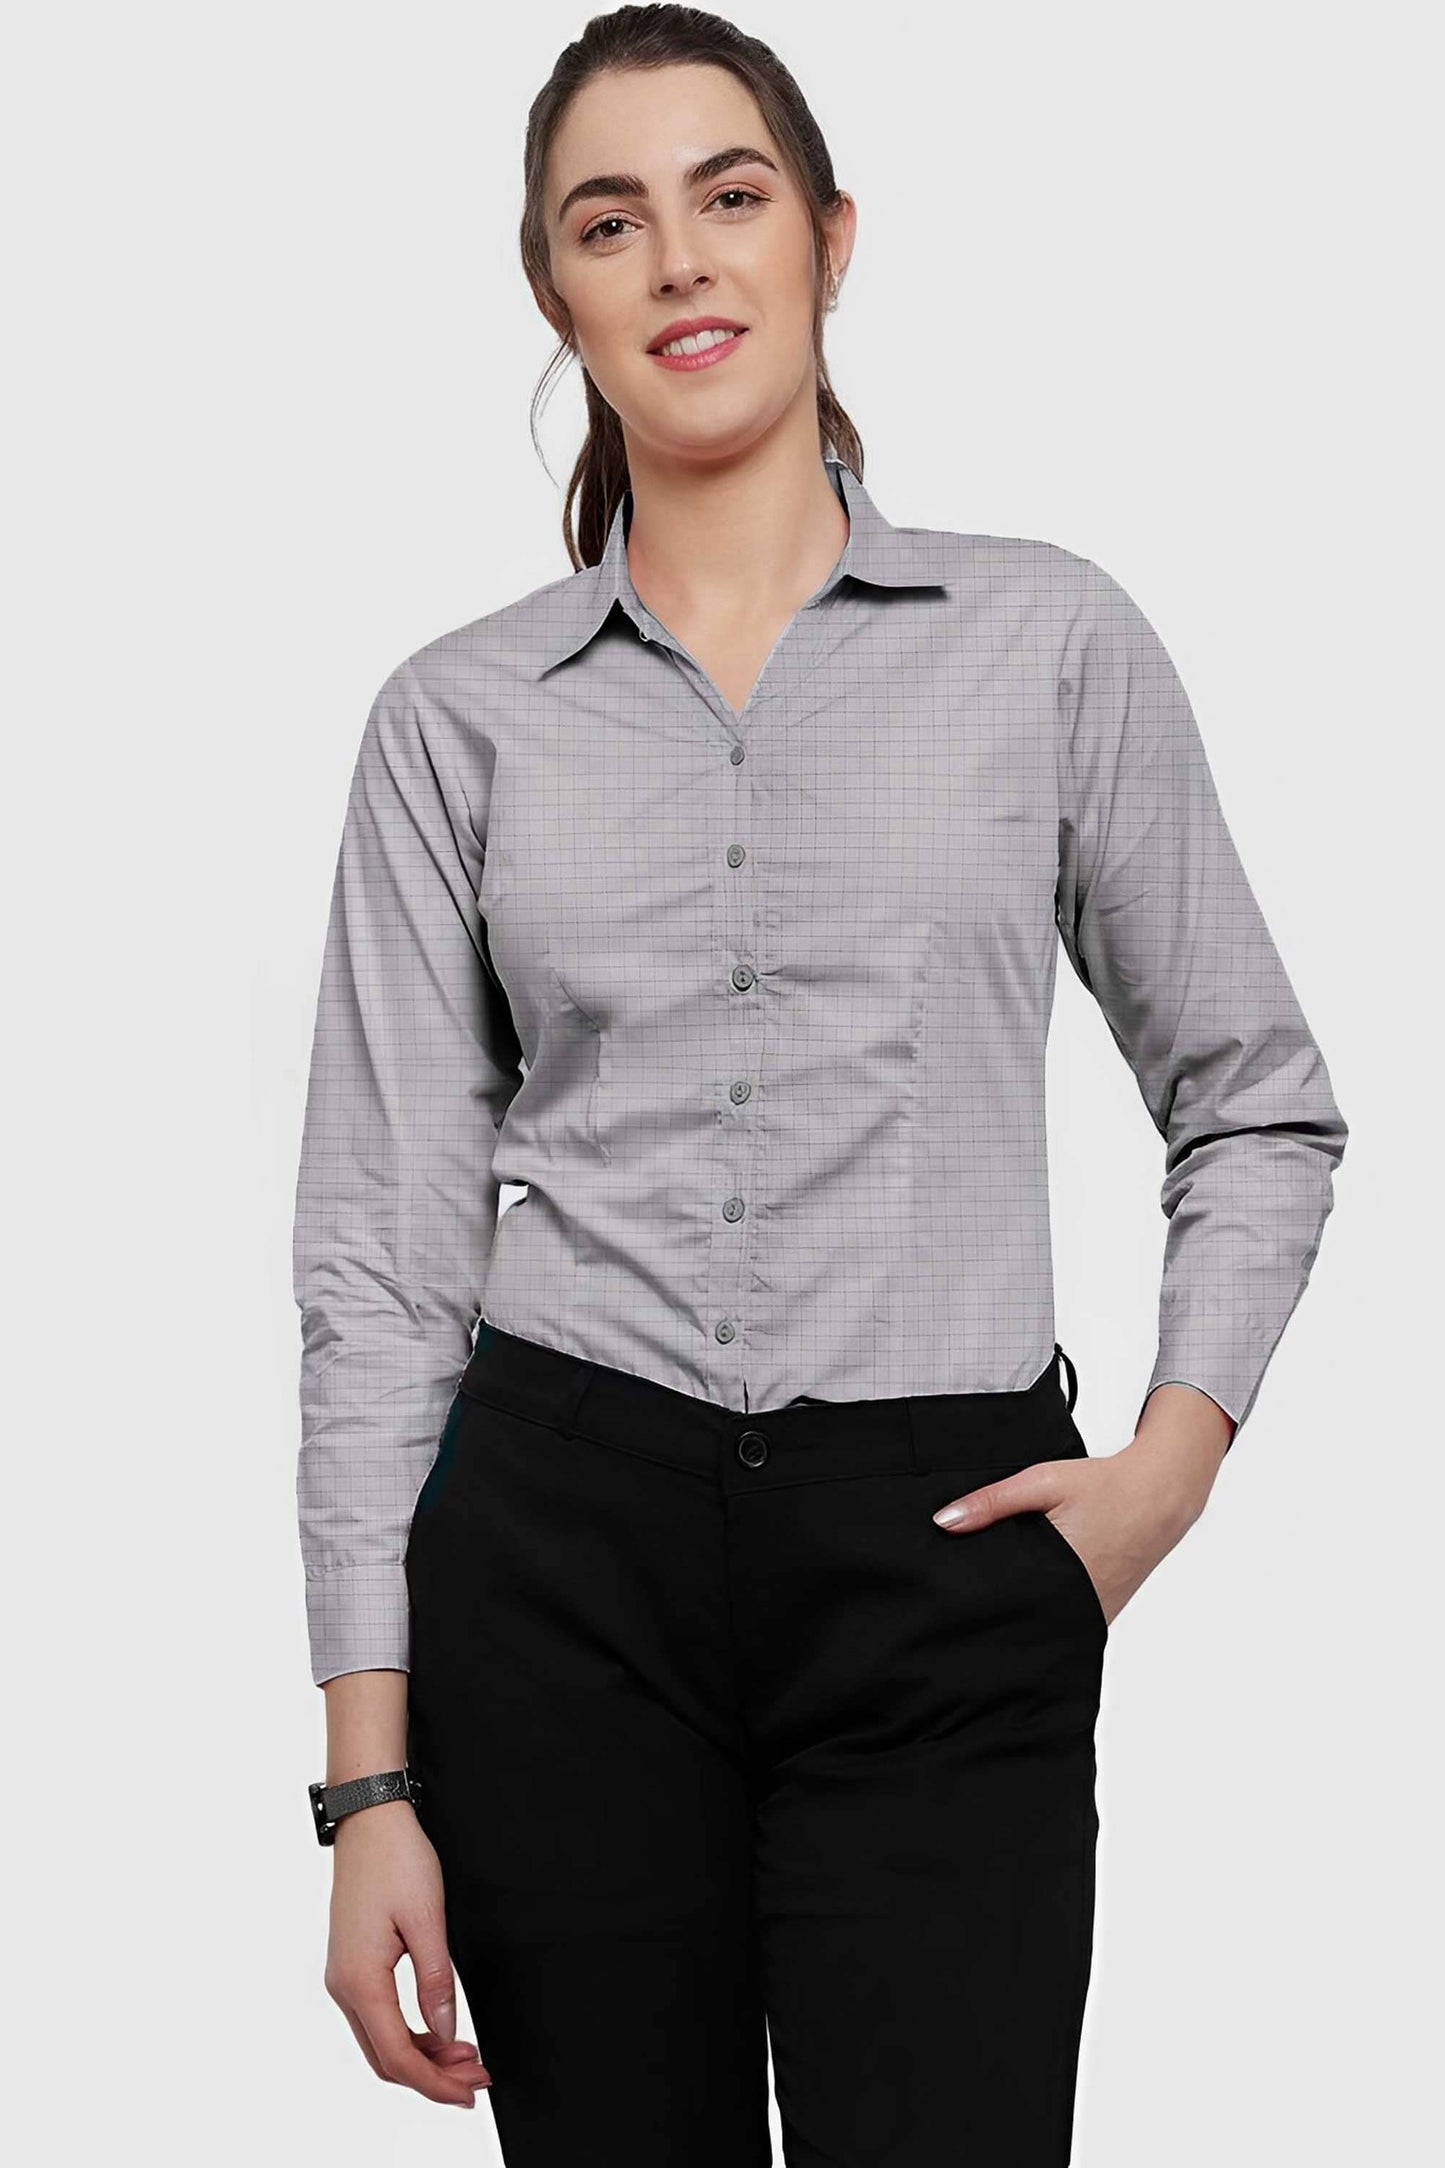 HM Women’s Check Style Casual Shirt Women's Casual Shirt CWE 